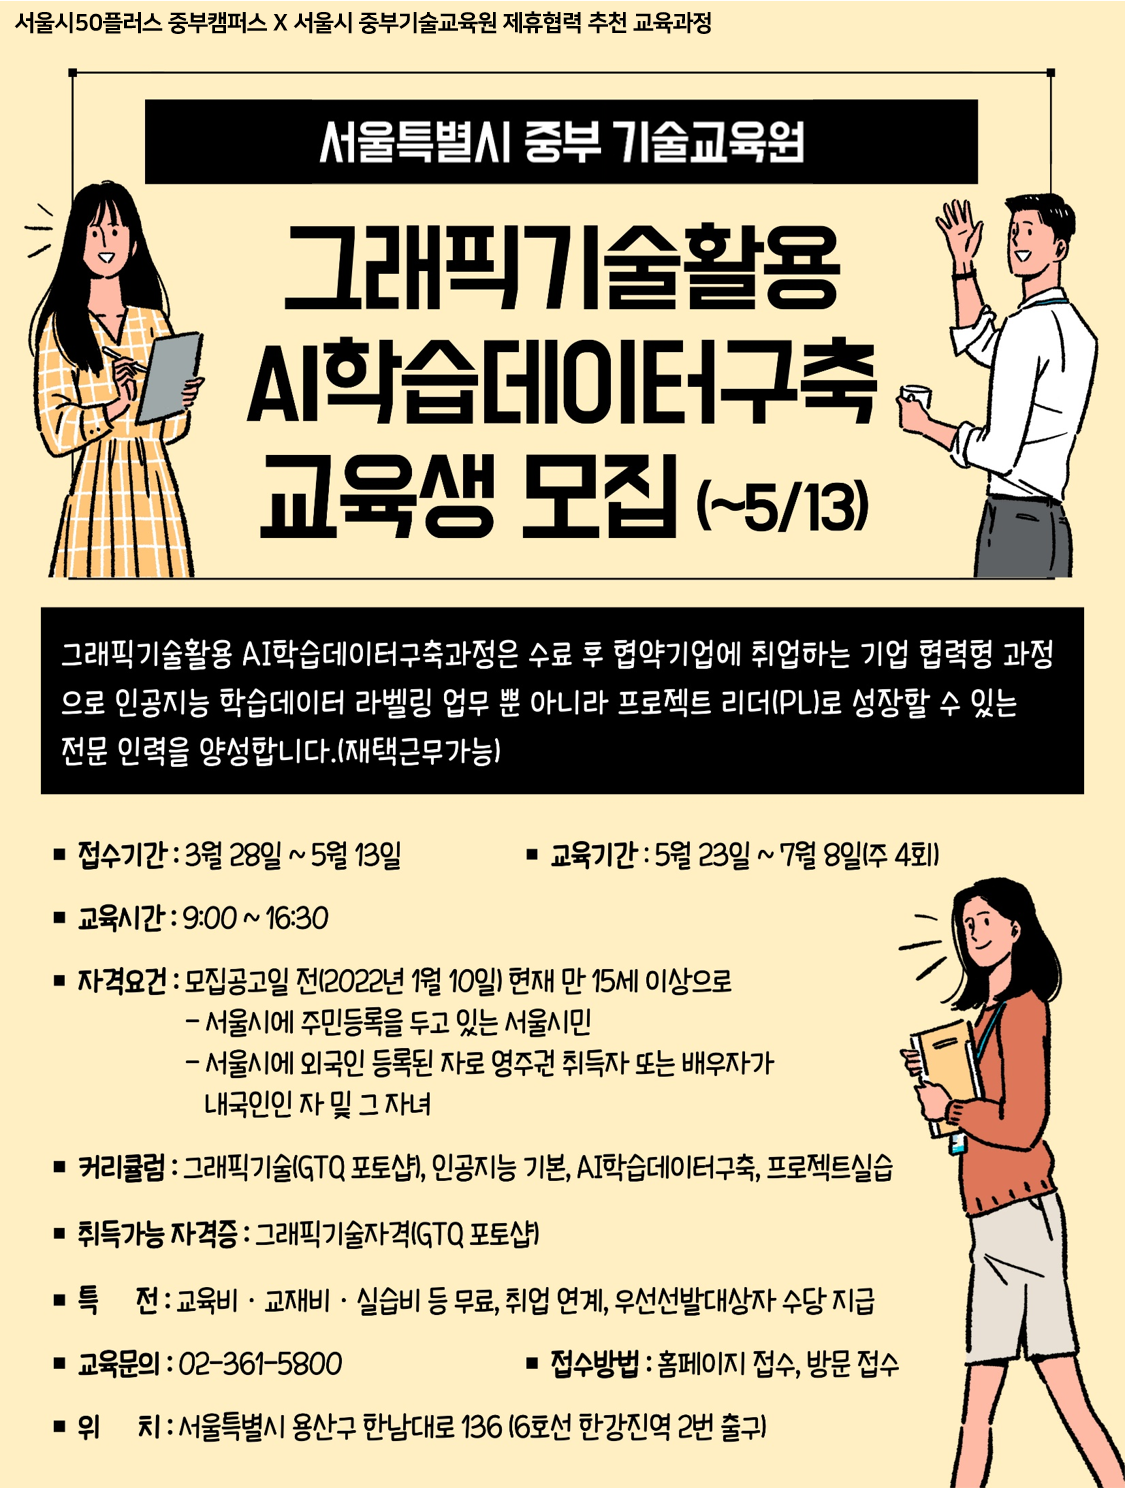 중부기술교육원+추천교육과정_ai학습데이터구축.png